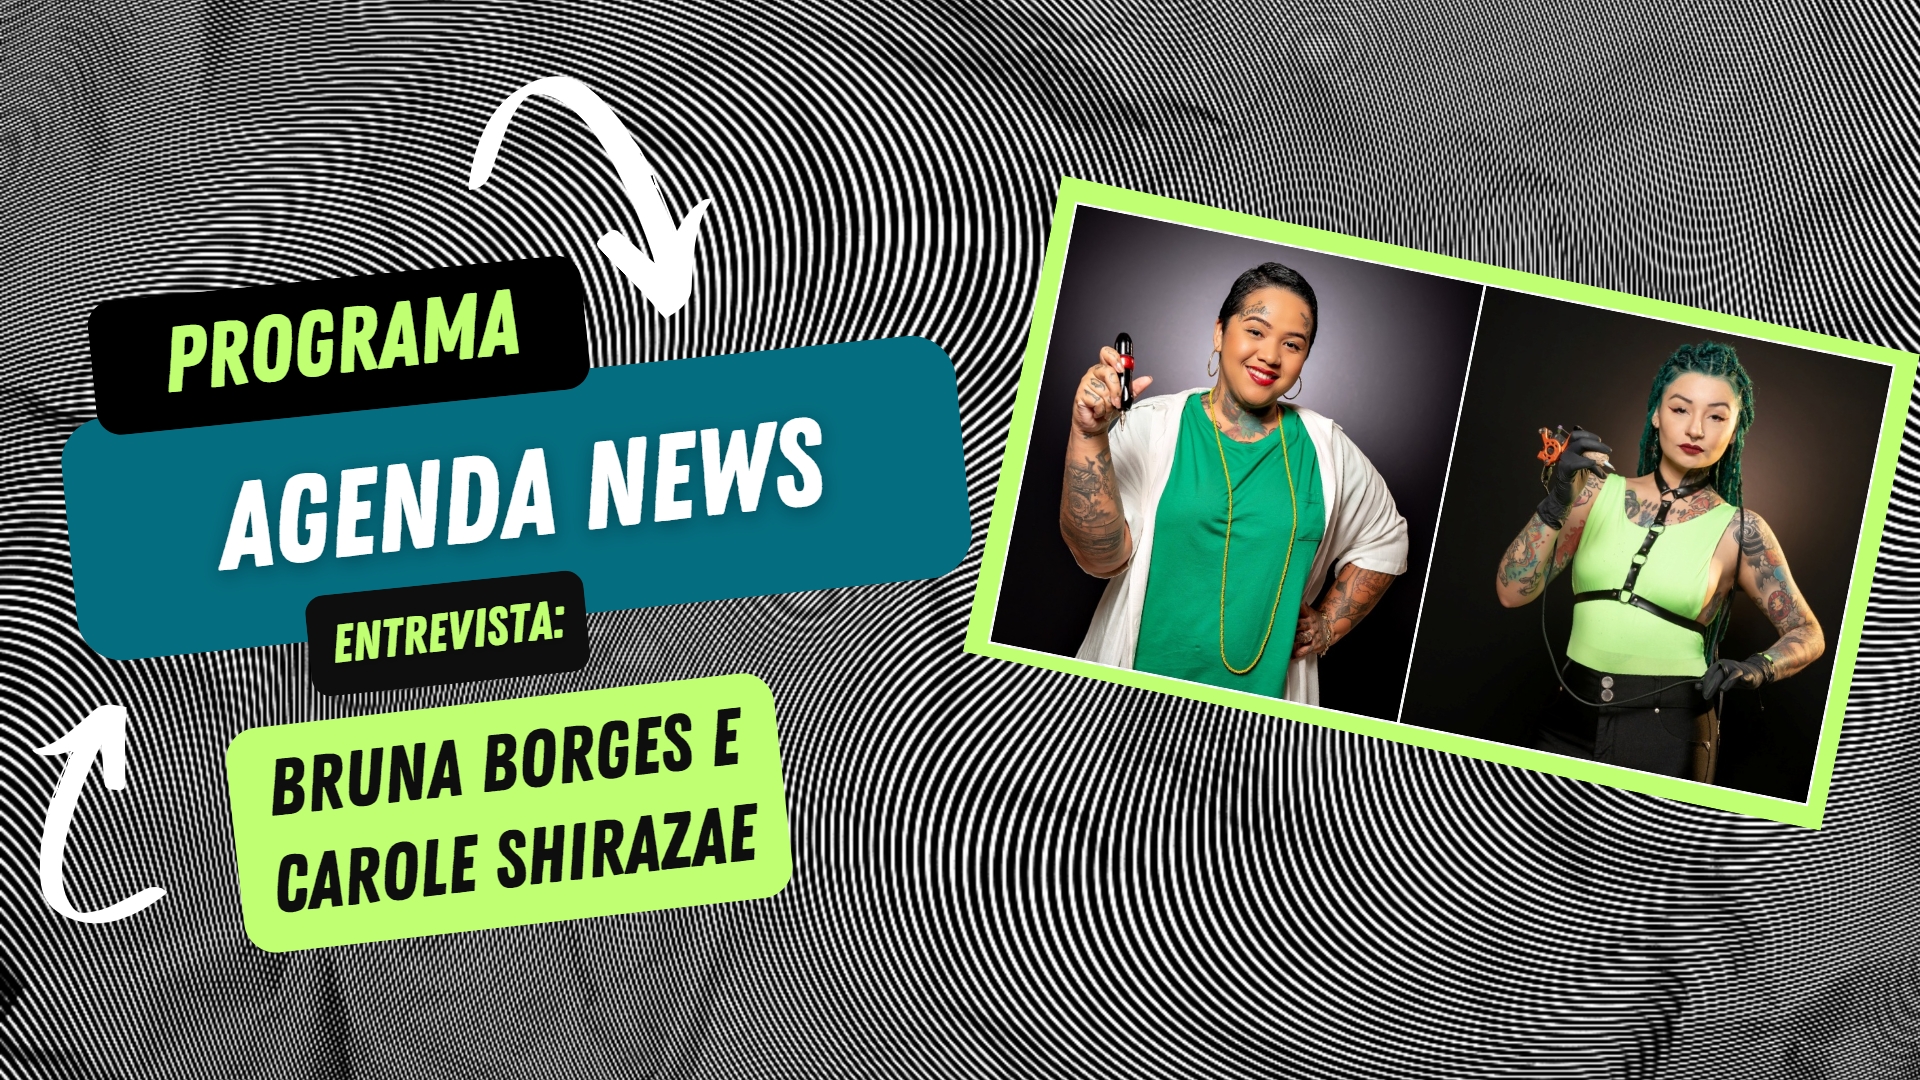 Agenda News entrevista: Carole Shirazae e Bruna Borges